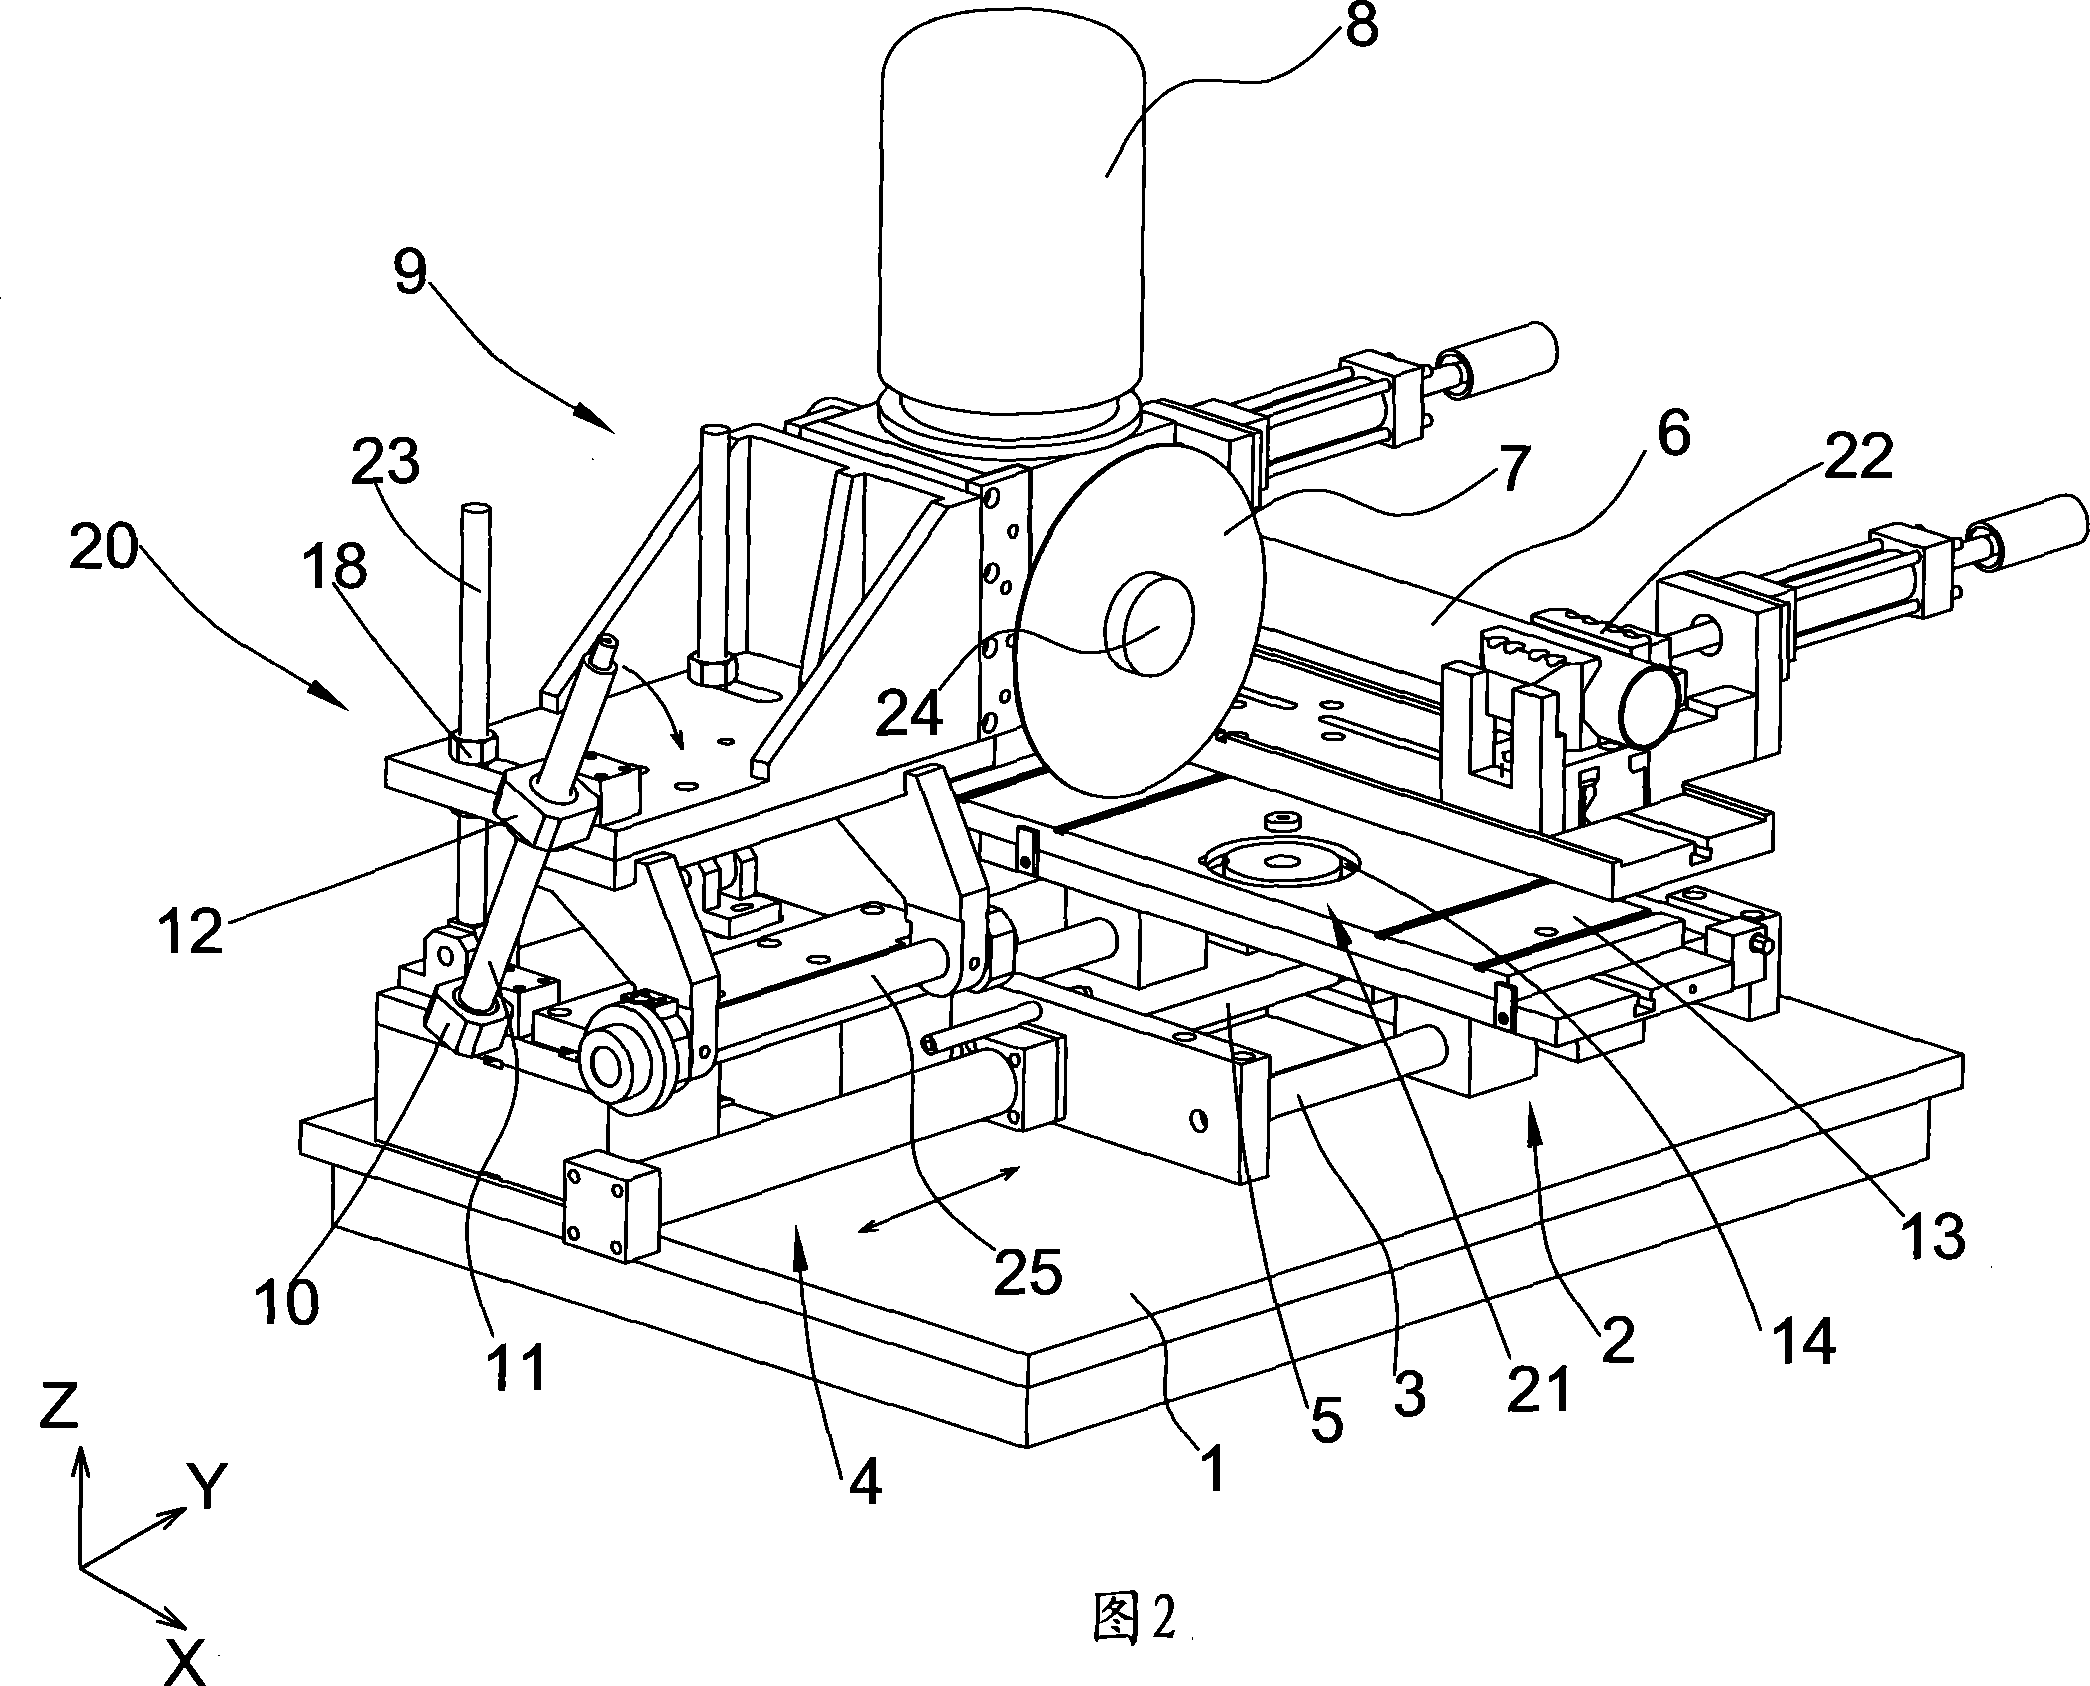 Three-dimensional pipe cutter